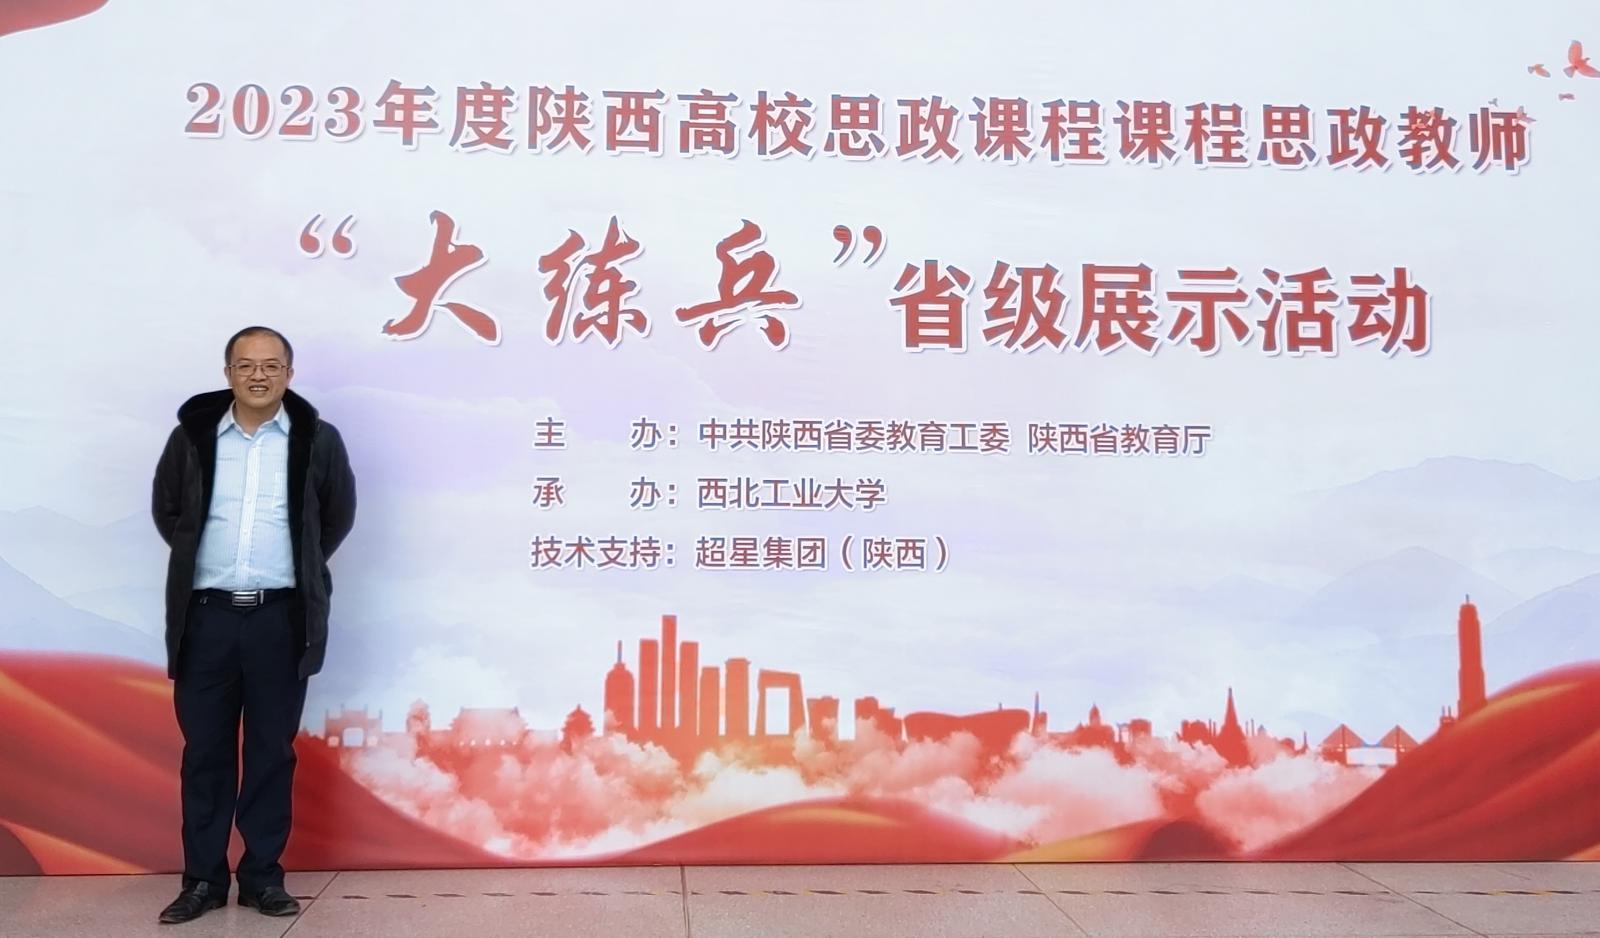 全校唯一 | 学院邓军教授获2023年度陕西省课程思政“教学标兵”称号